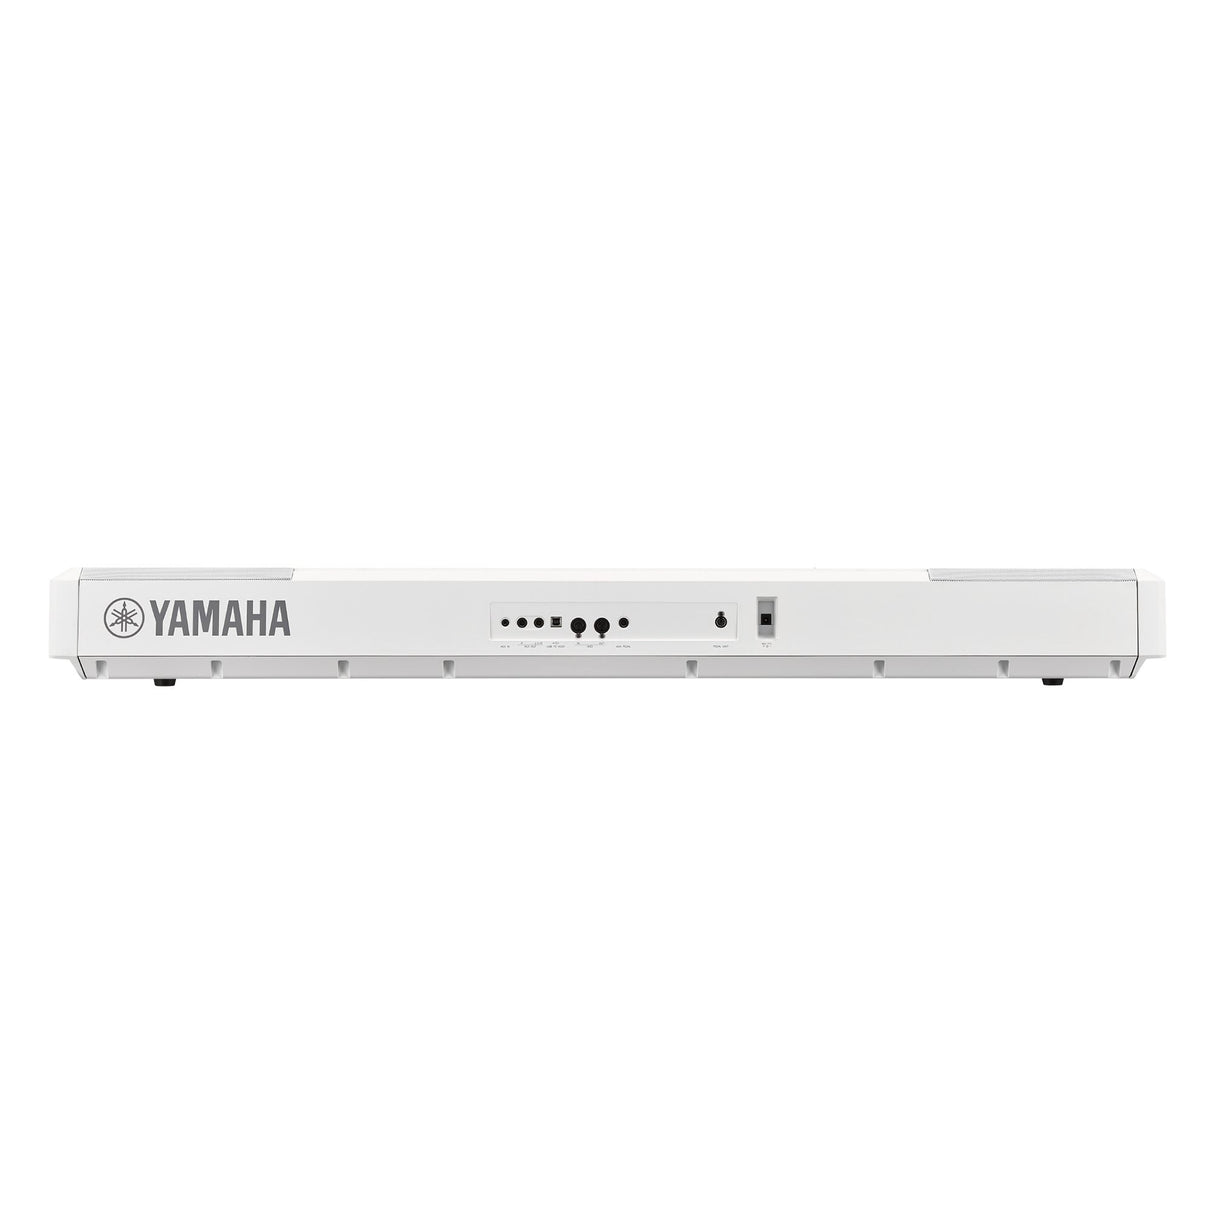 yamaha p515 white connectivity back panel